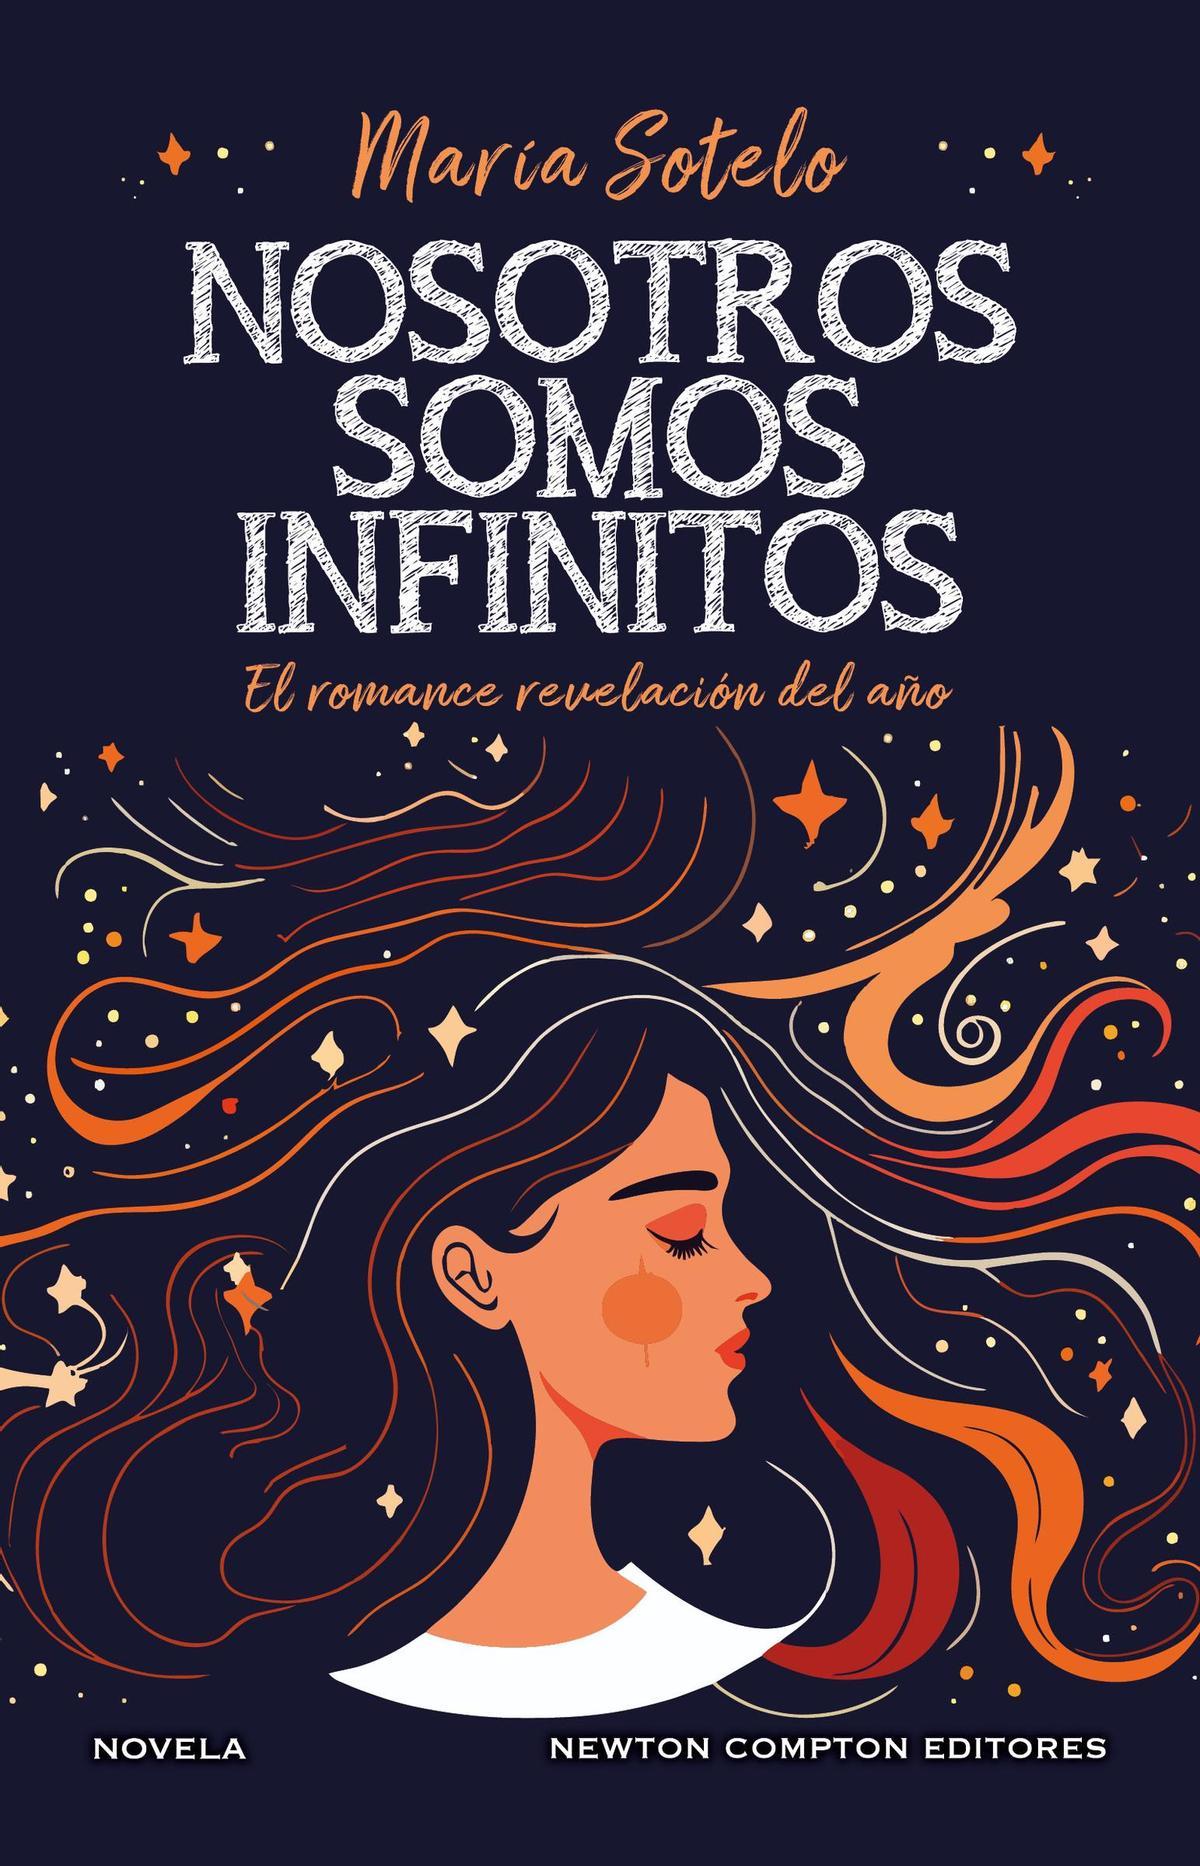 Portada del libro de María Sotelo, &quot;Nosotros somos infinitos&quot;